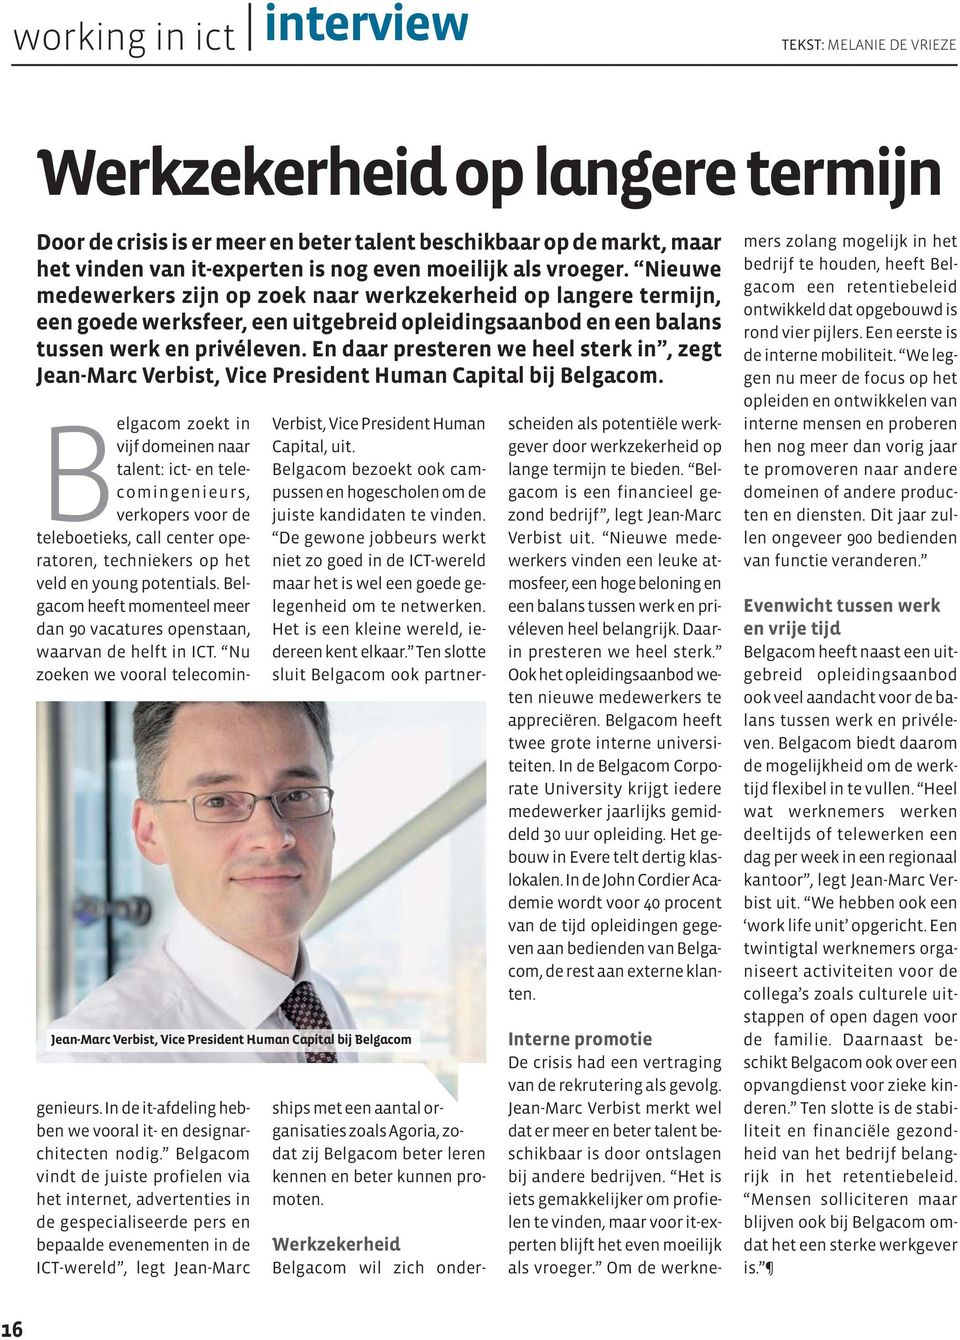 En daar presteren we heel sterk in, zegt Jean-Marc Verbist, Vice President Human Capital bij Belgacom.